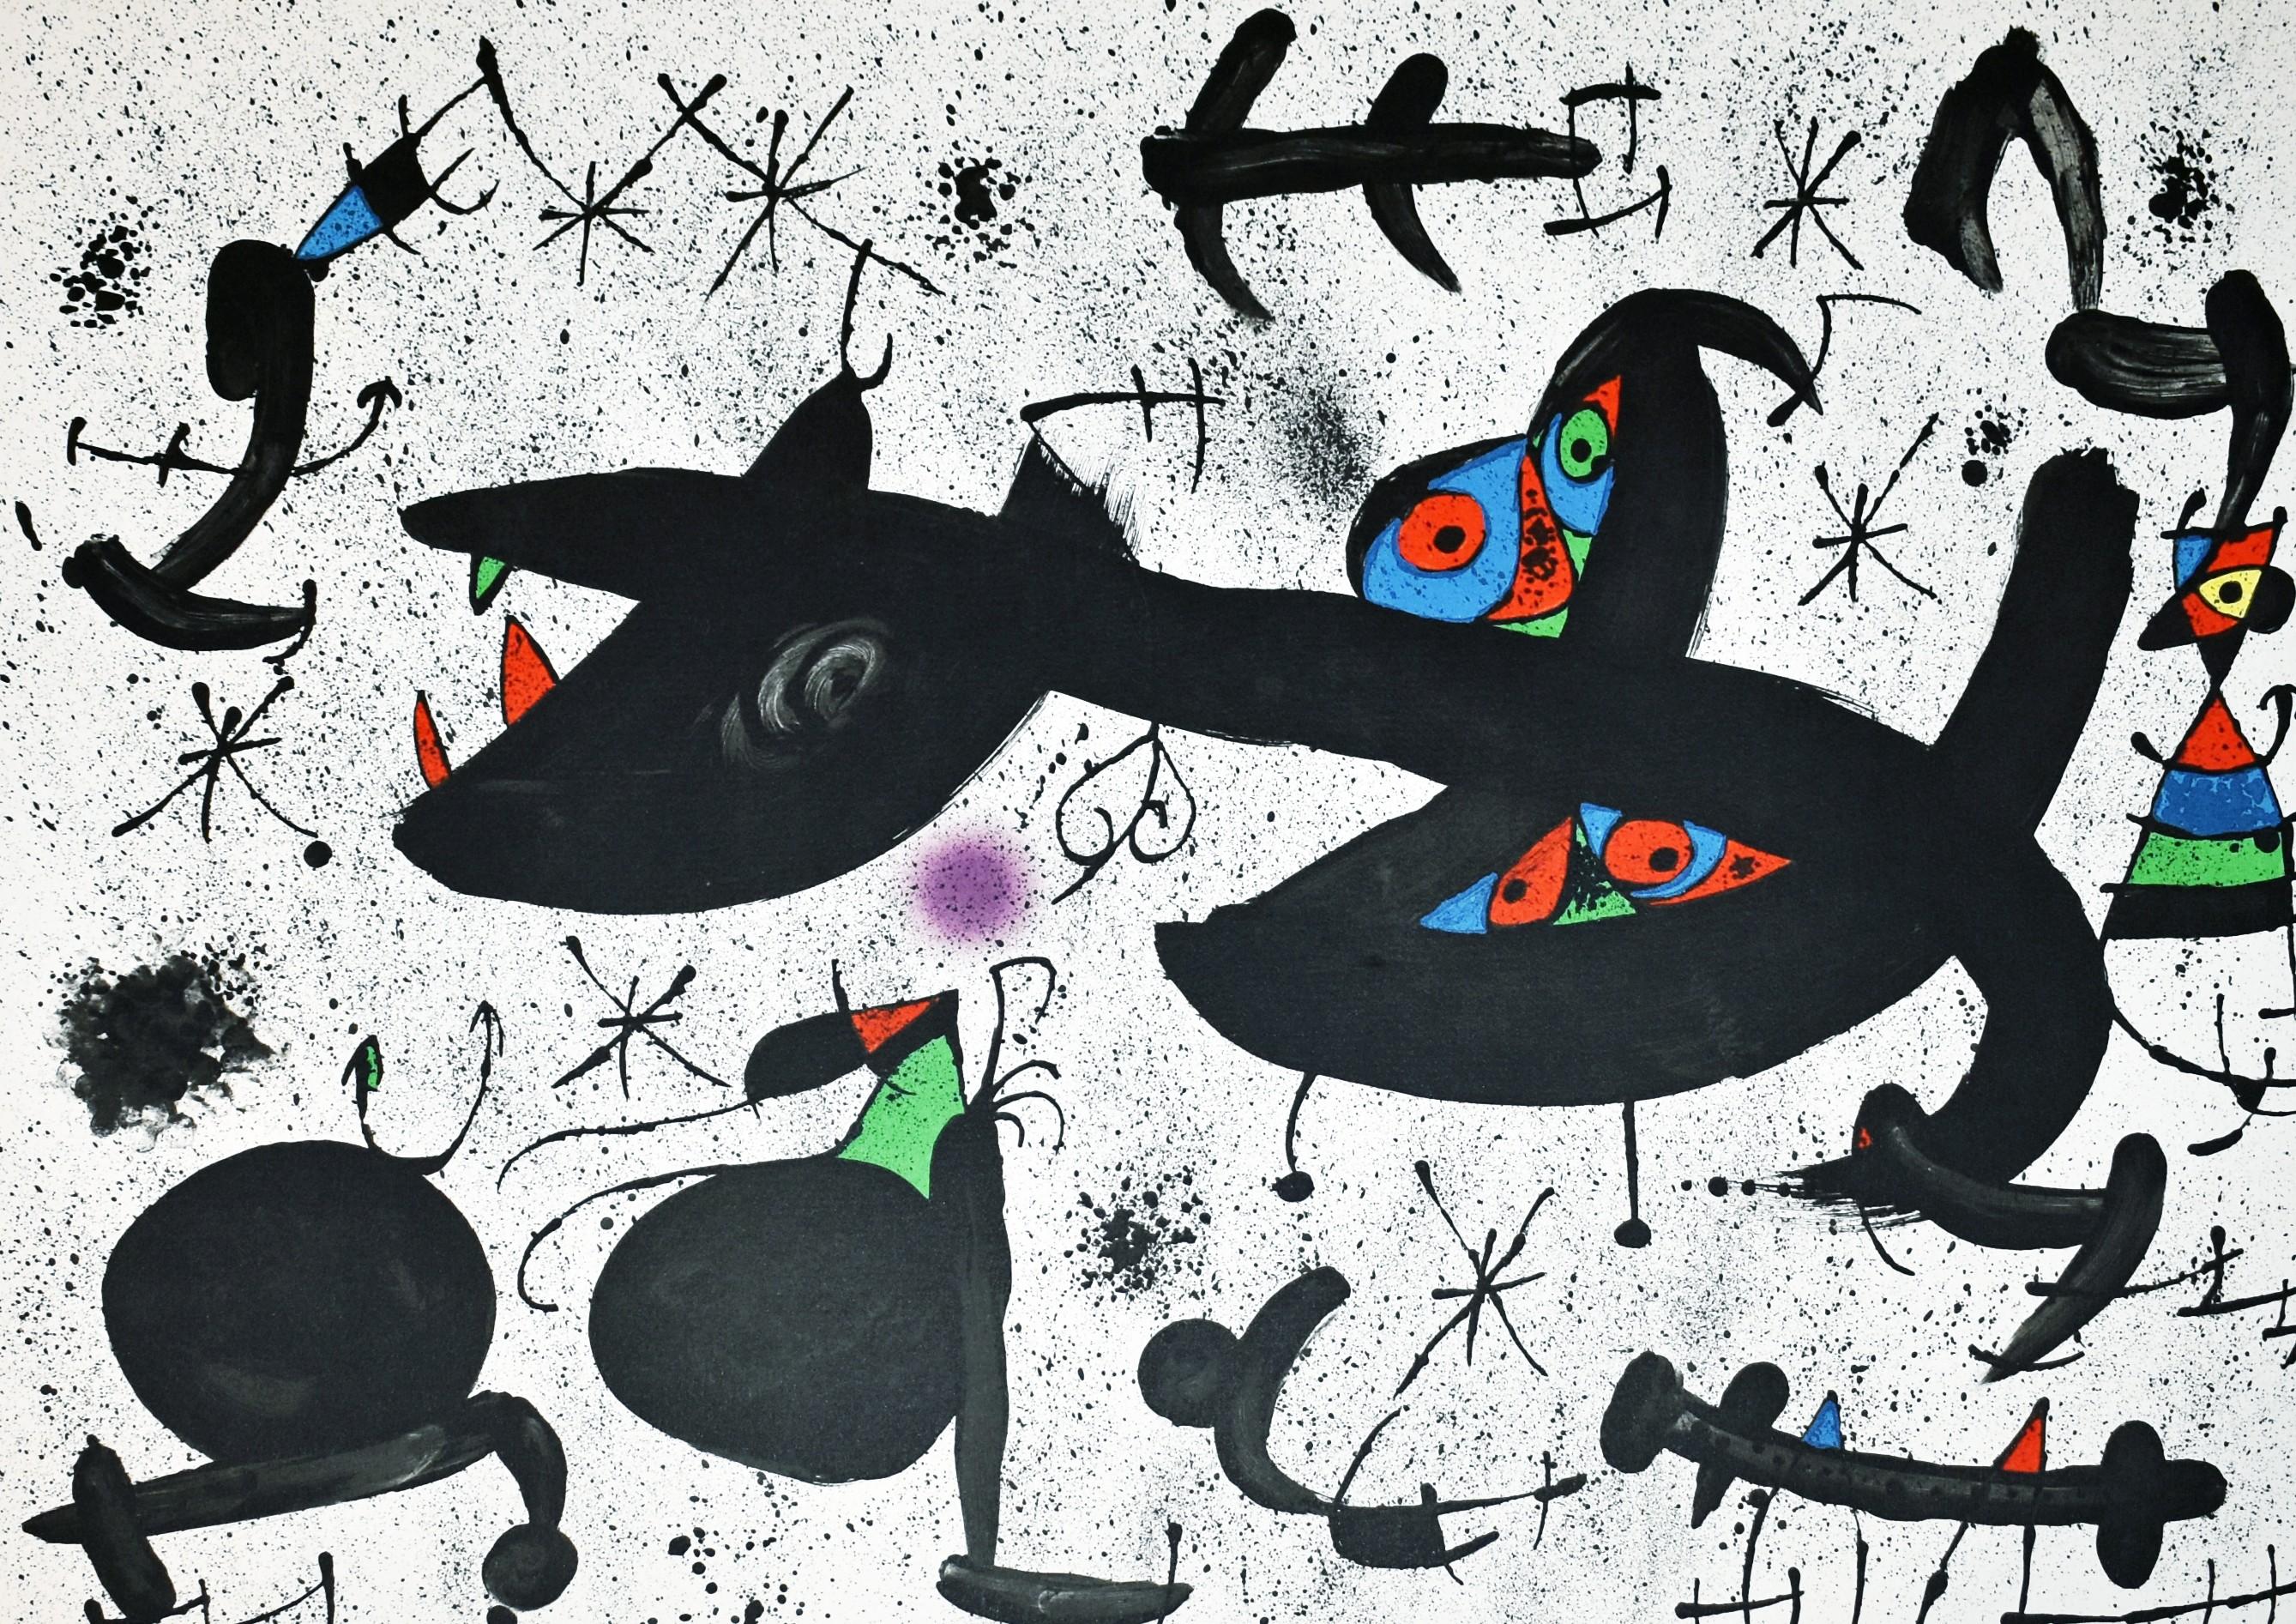 Homentage a Joan Prats - Print by Joan Miró